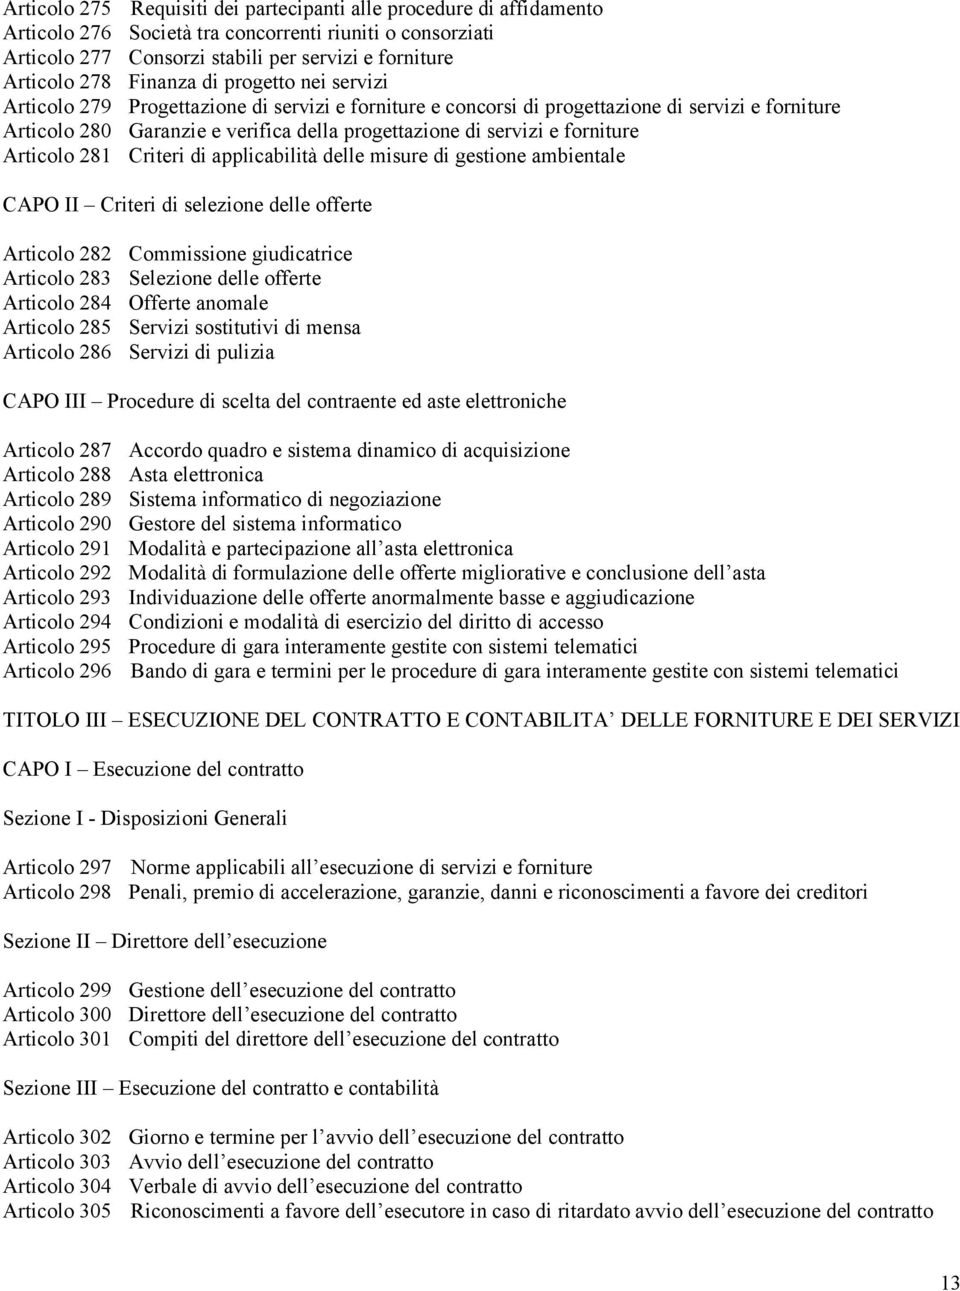 forniture Articolo 281 Criteri di applicabilità delle misure di gestione ambientale CAPO II Criteri di selezione delle offerte Articolo 282 Commissione giudicatrice Articolo 283 Selezione delle